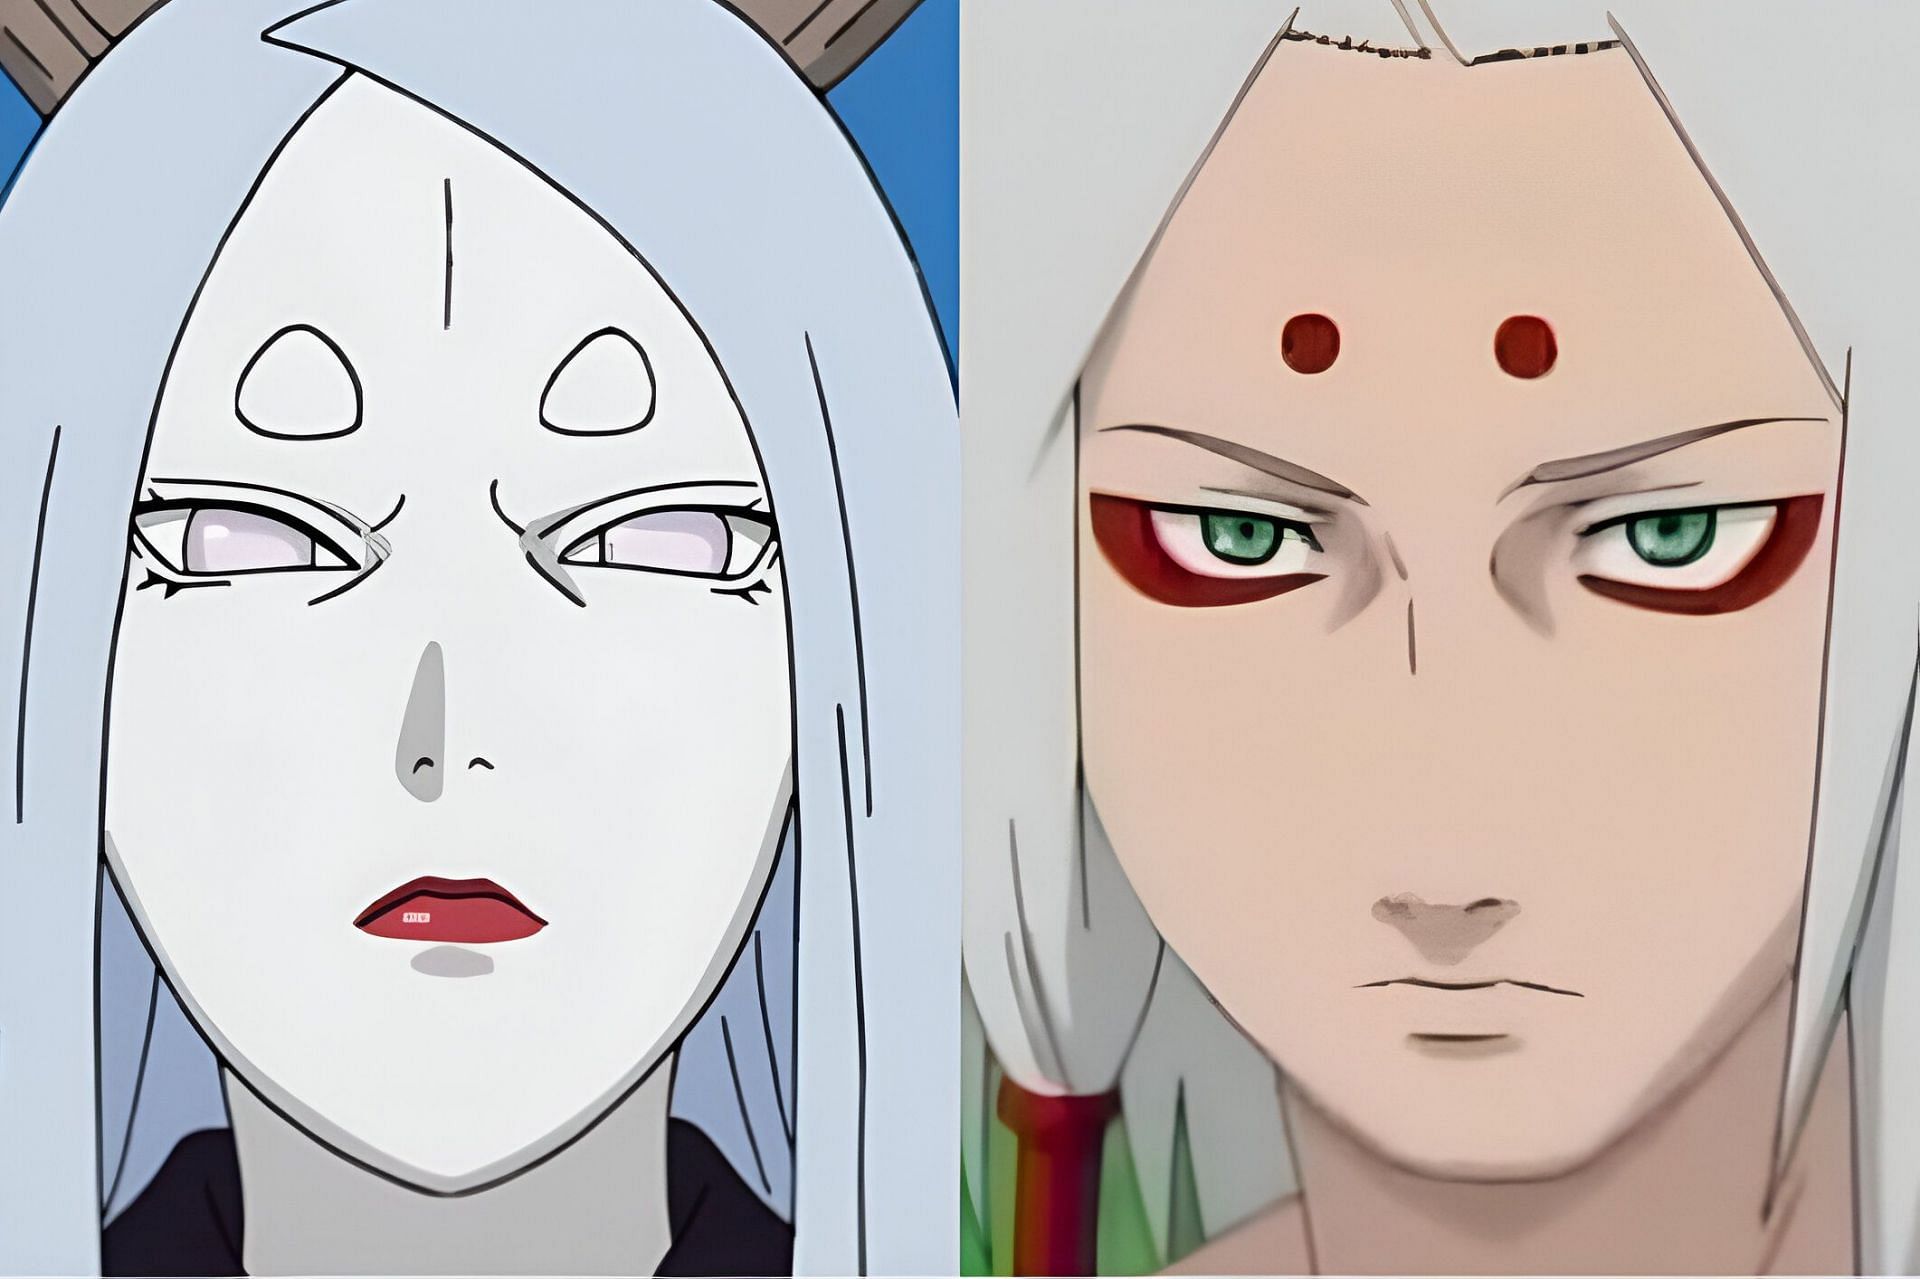 Naruto: Was Kaguya Otsutsuki always meant to be the series